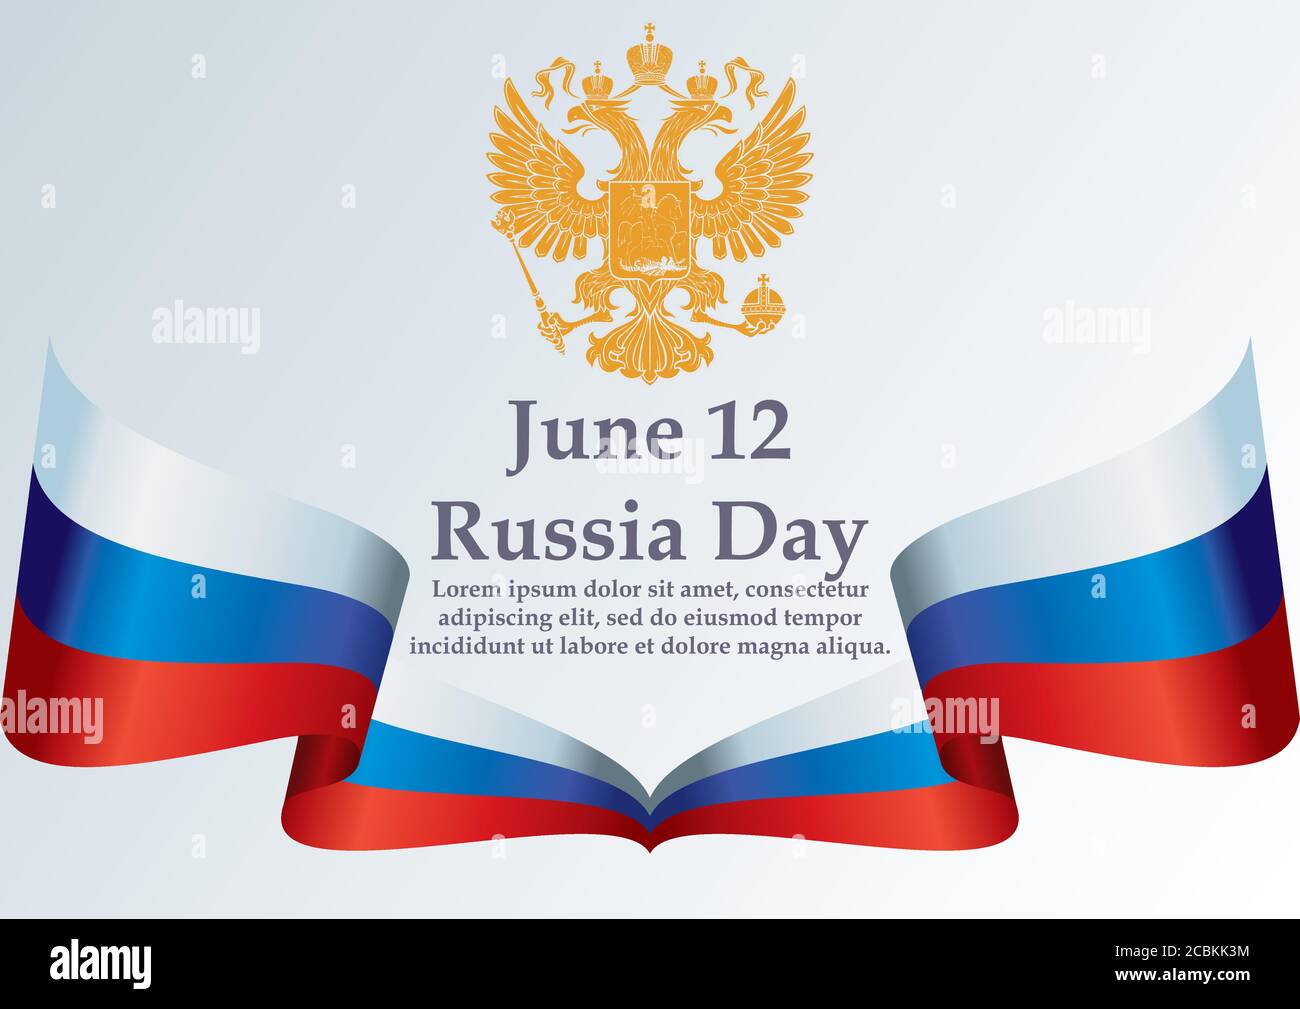 Flagge Russlands, Russische Föderation. Russische Flagge. 12. Juni, Russlandtag. Vorlage für Award Design, ein offizielles Dokument mit der Flagge Russlands. Stock Vektor